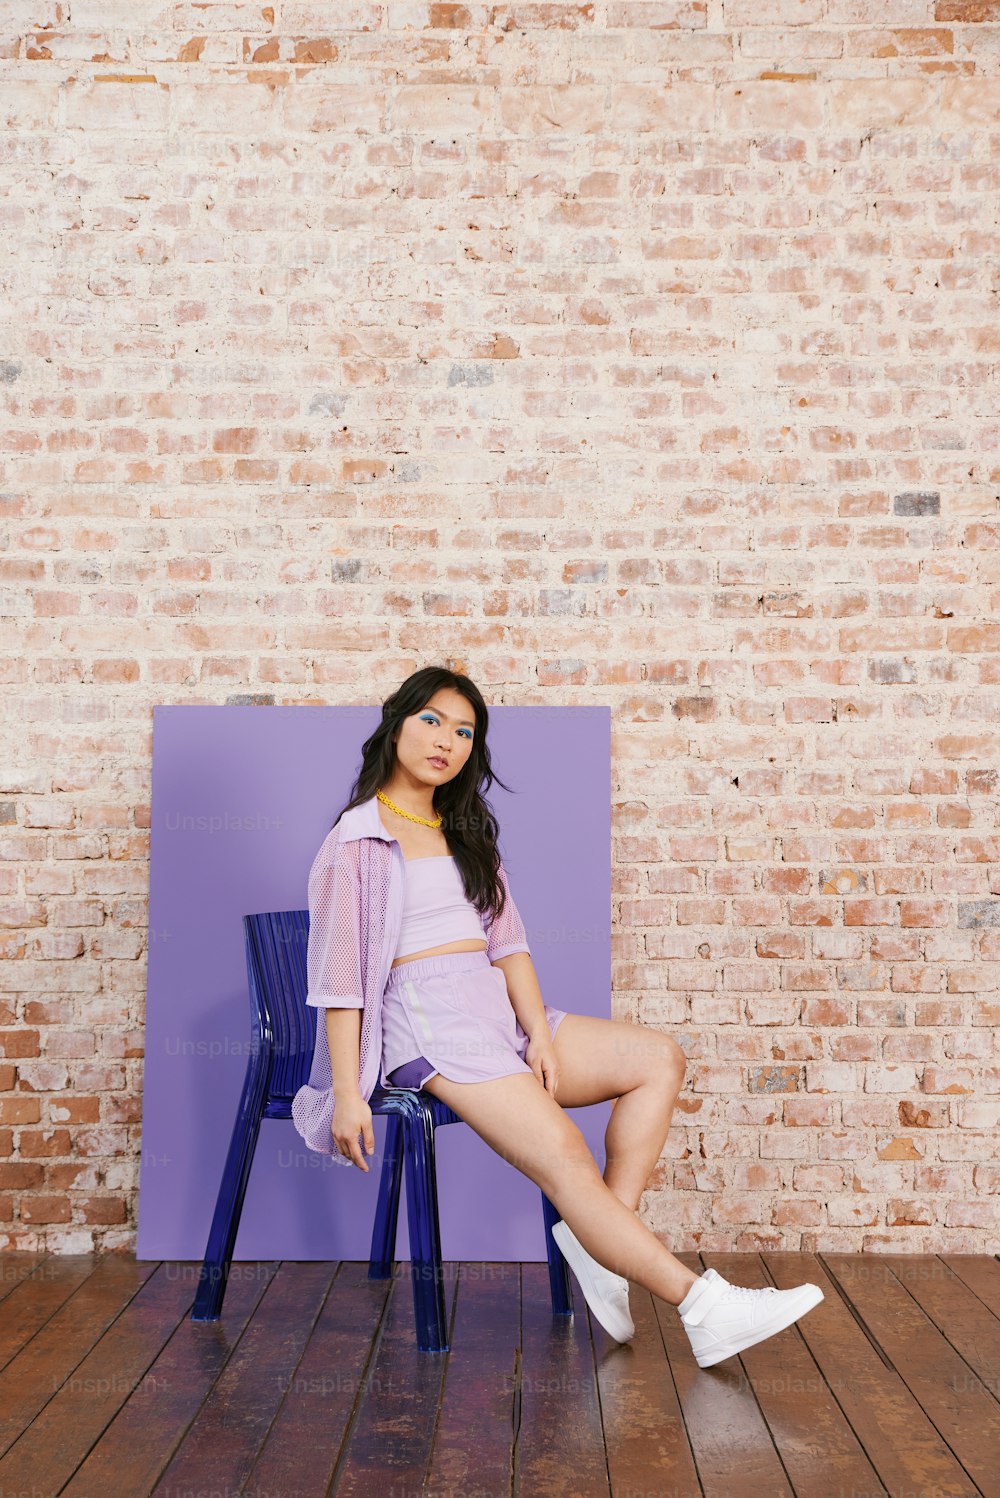 Una mujer sentada en una silla frente a una pared de ladrillos